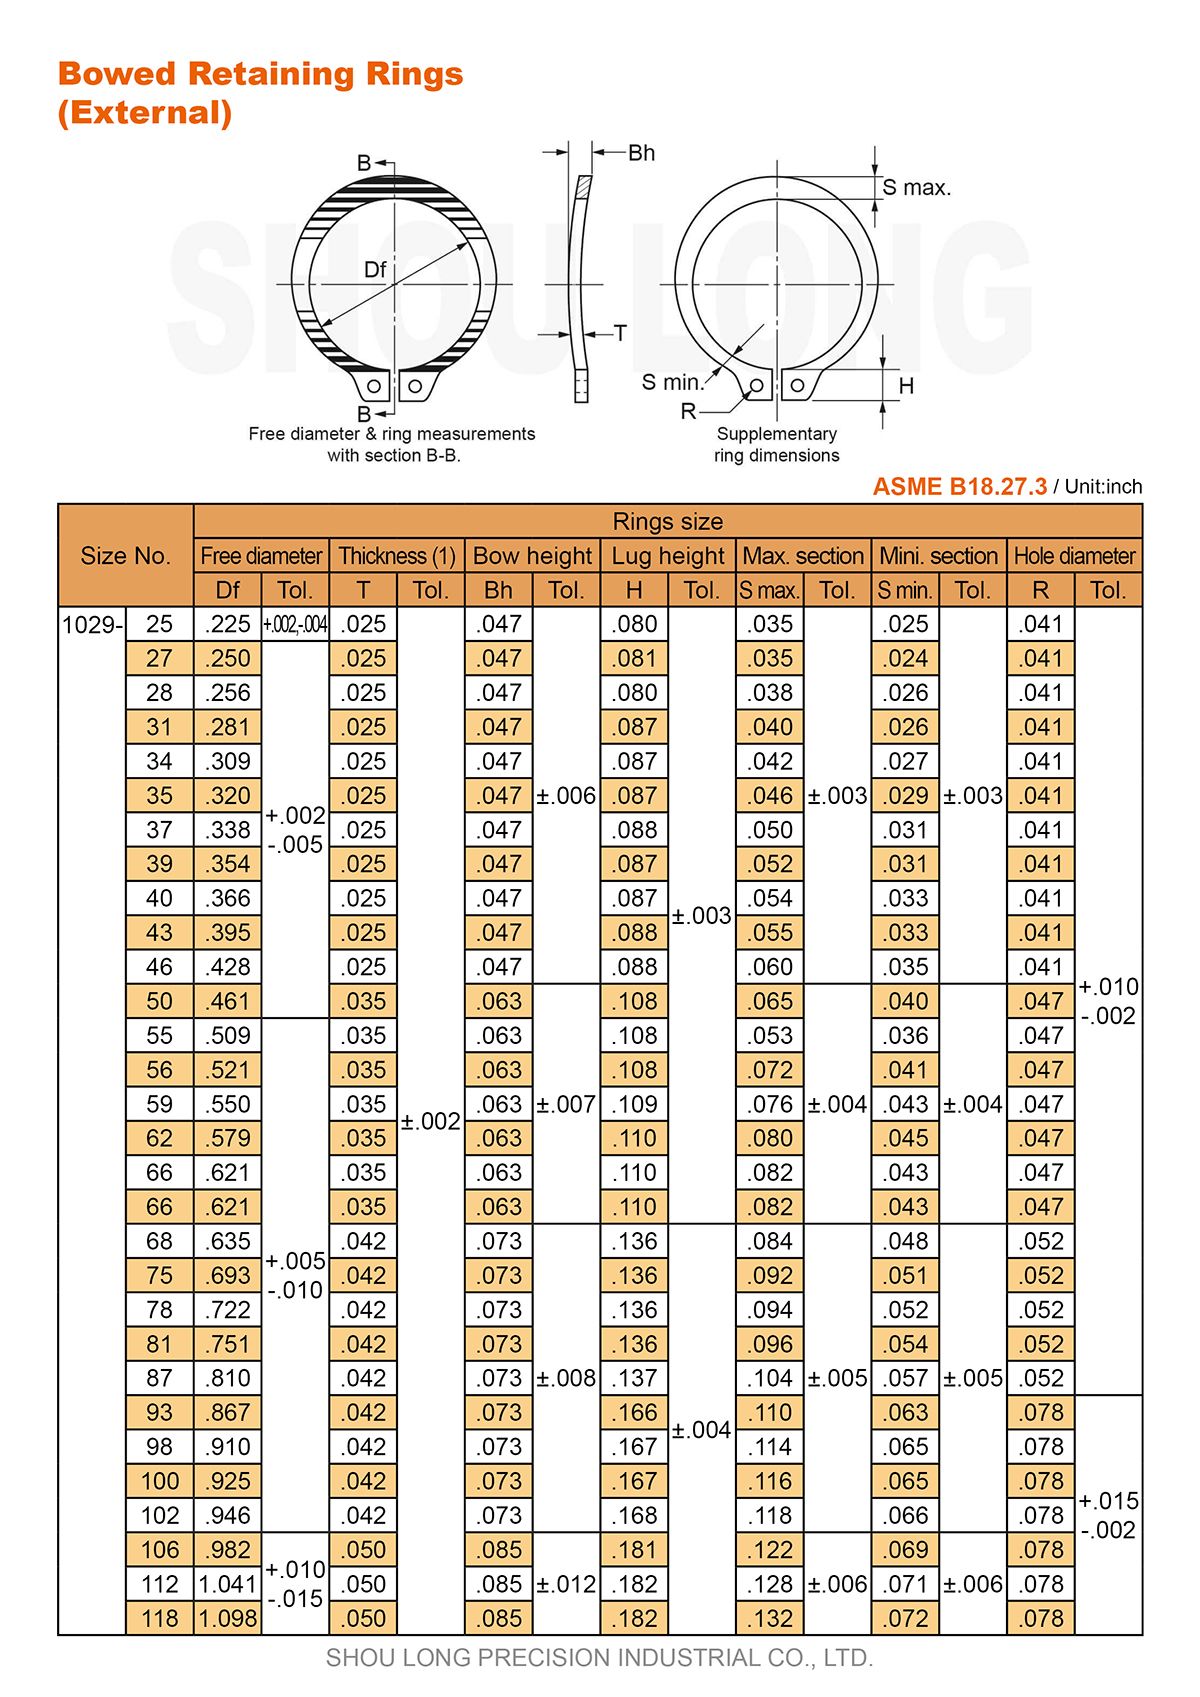 Спецификация дуговых удерживающих колец для вала дюймовой системы ASME/ANSI B18.27.3-1